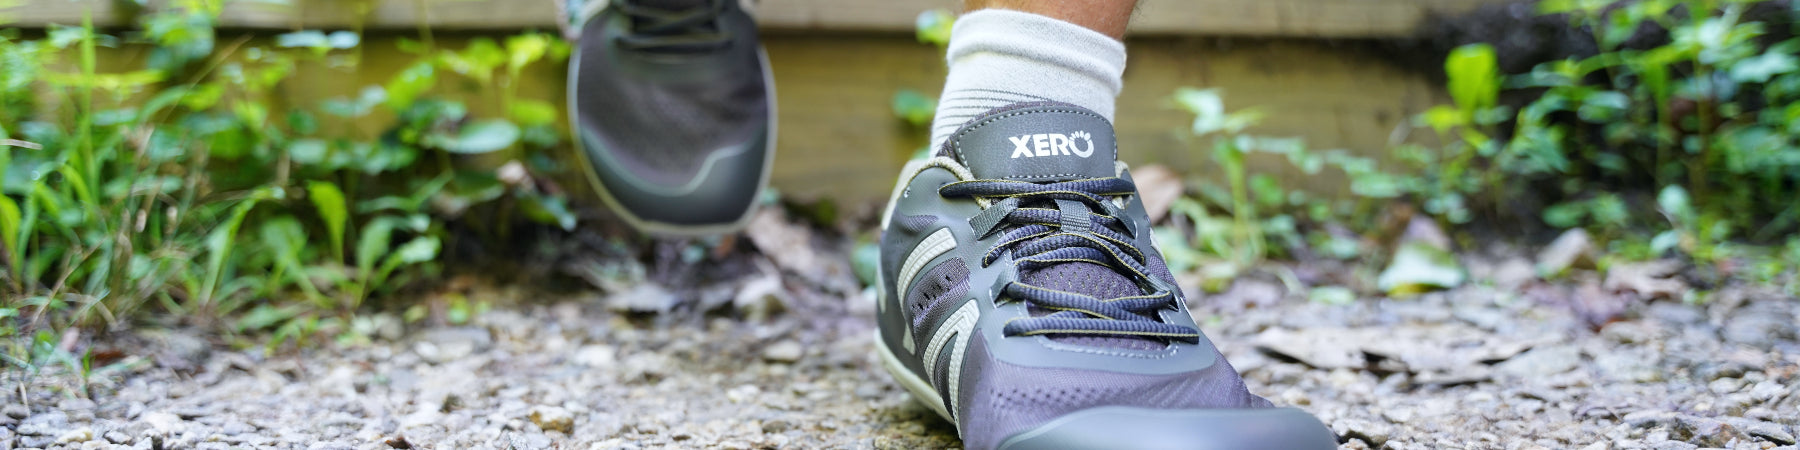 Xero shoes Pagosa Hiking Shoes Grey